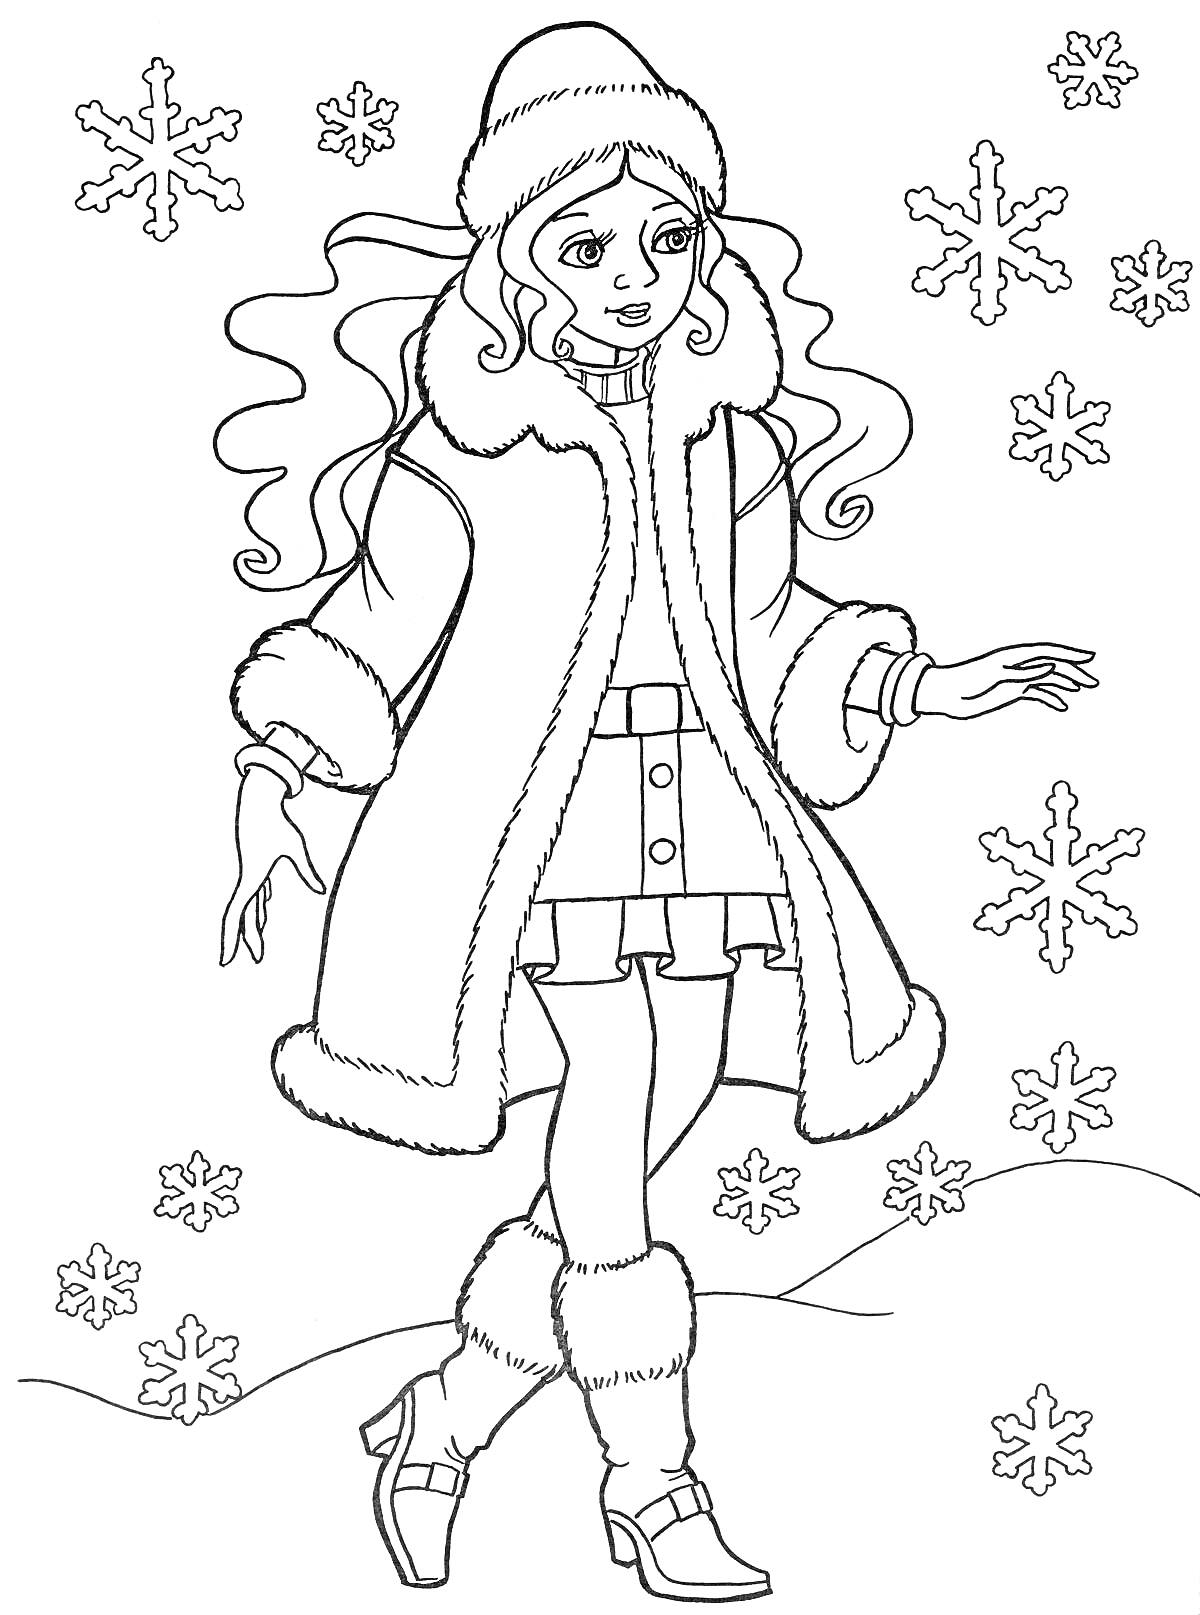 Девочка в зимней одежде на фоне снежинок